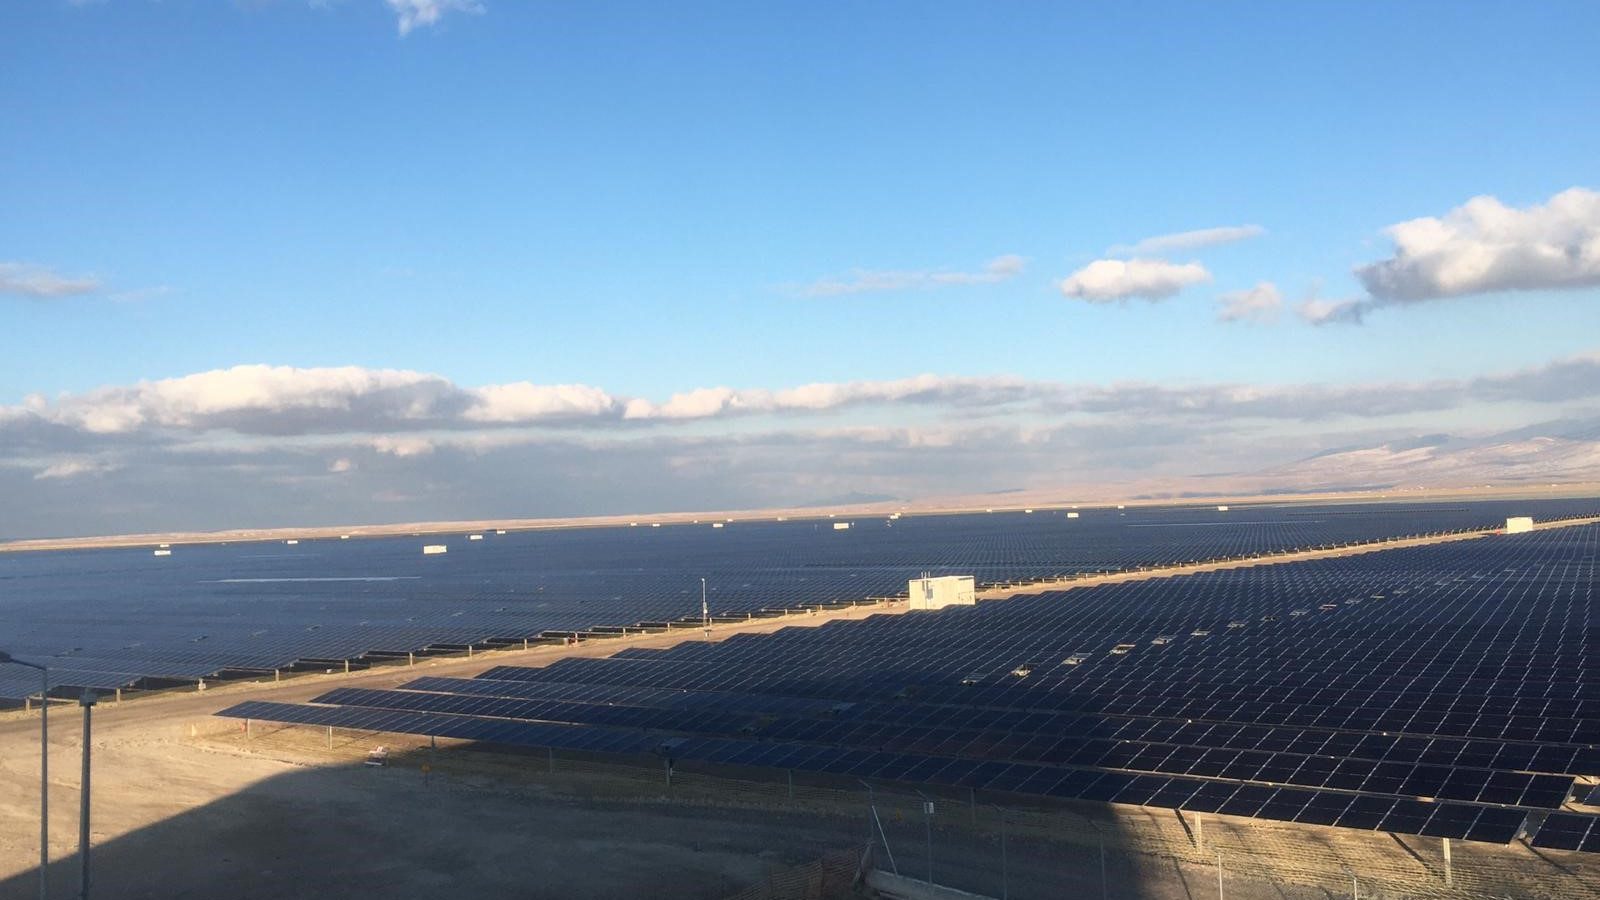 GE ve UKEF, Türkiye’nin en büyük güneş enerjisi projesine destek vermek üzere anlaştı